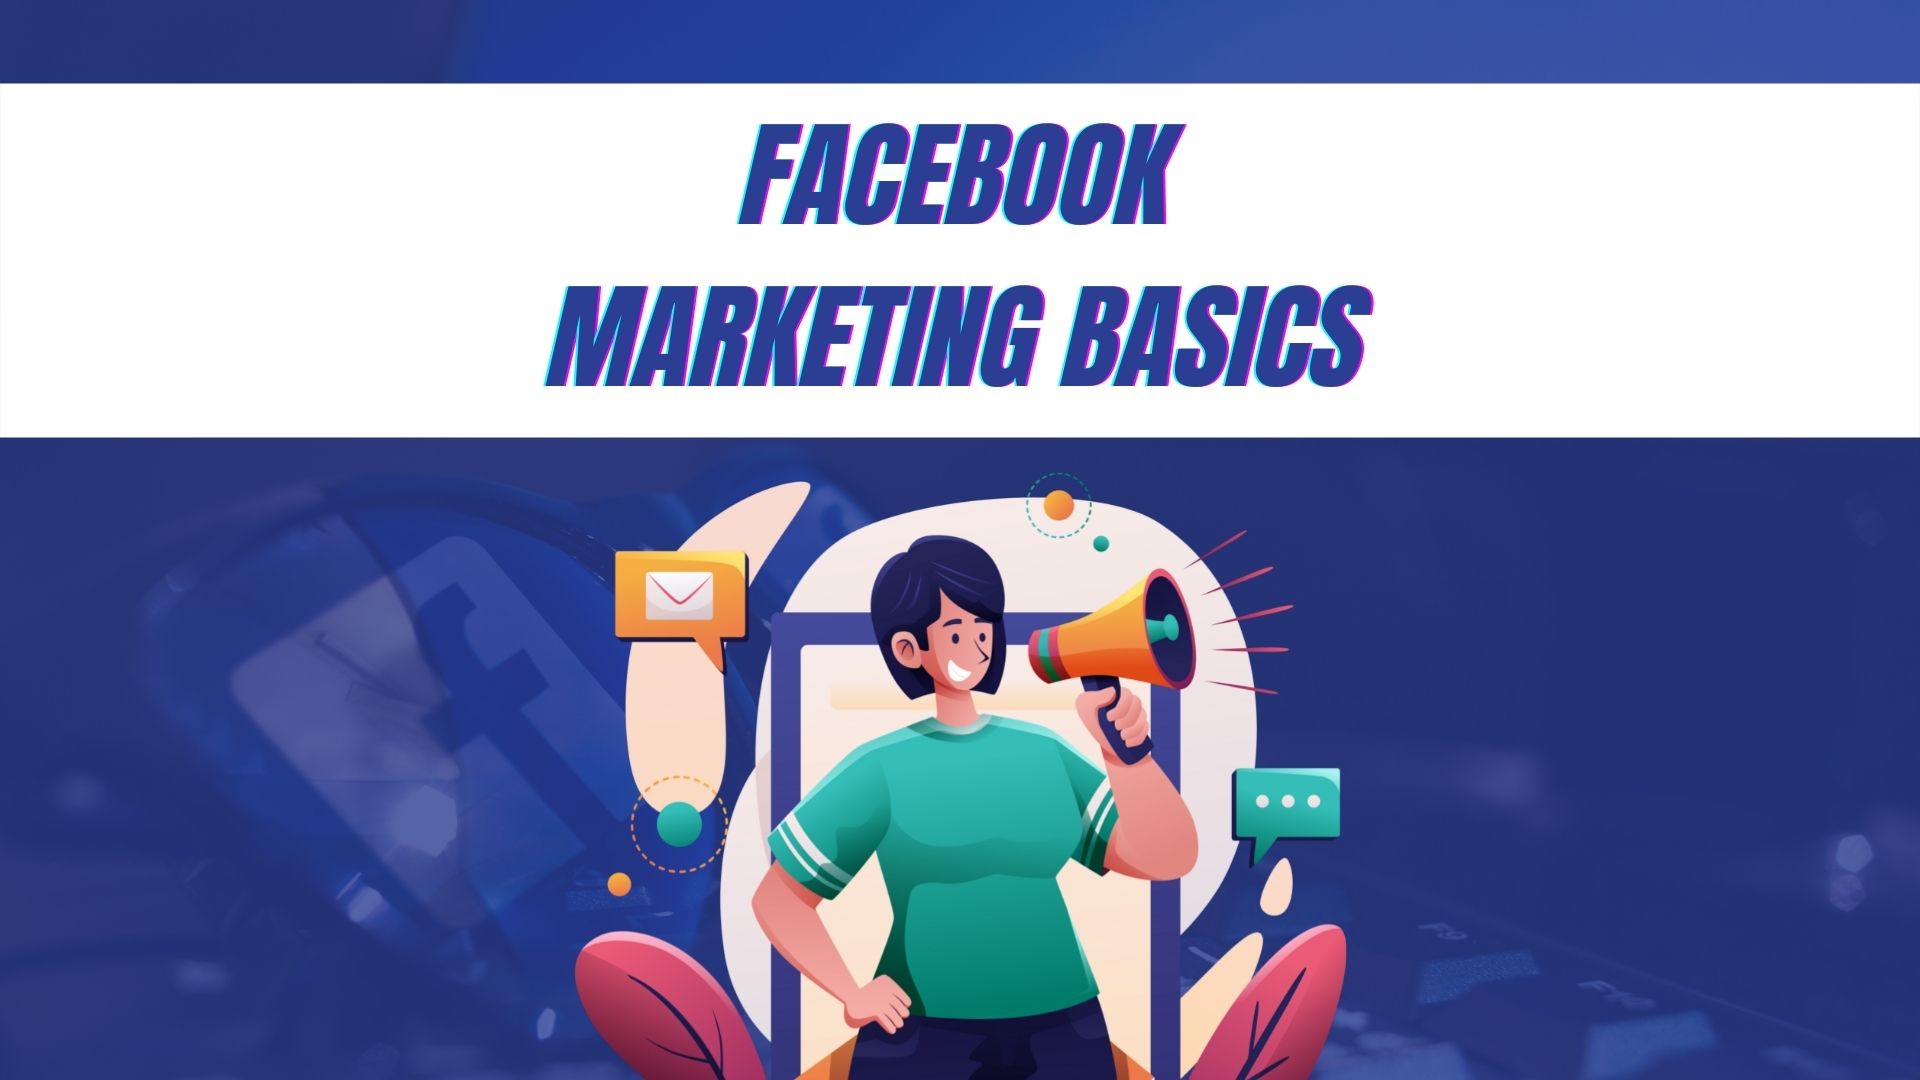 Facebook Marketing Basics Course Image